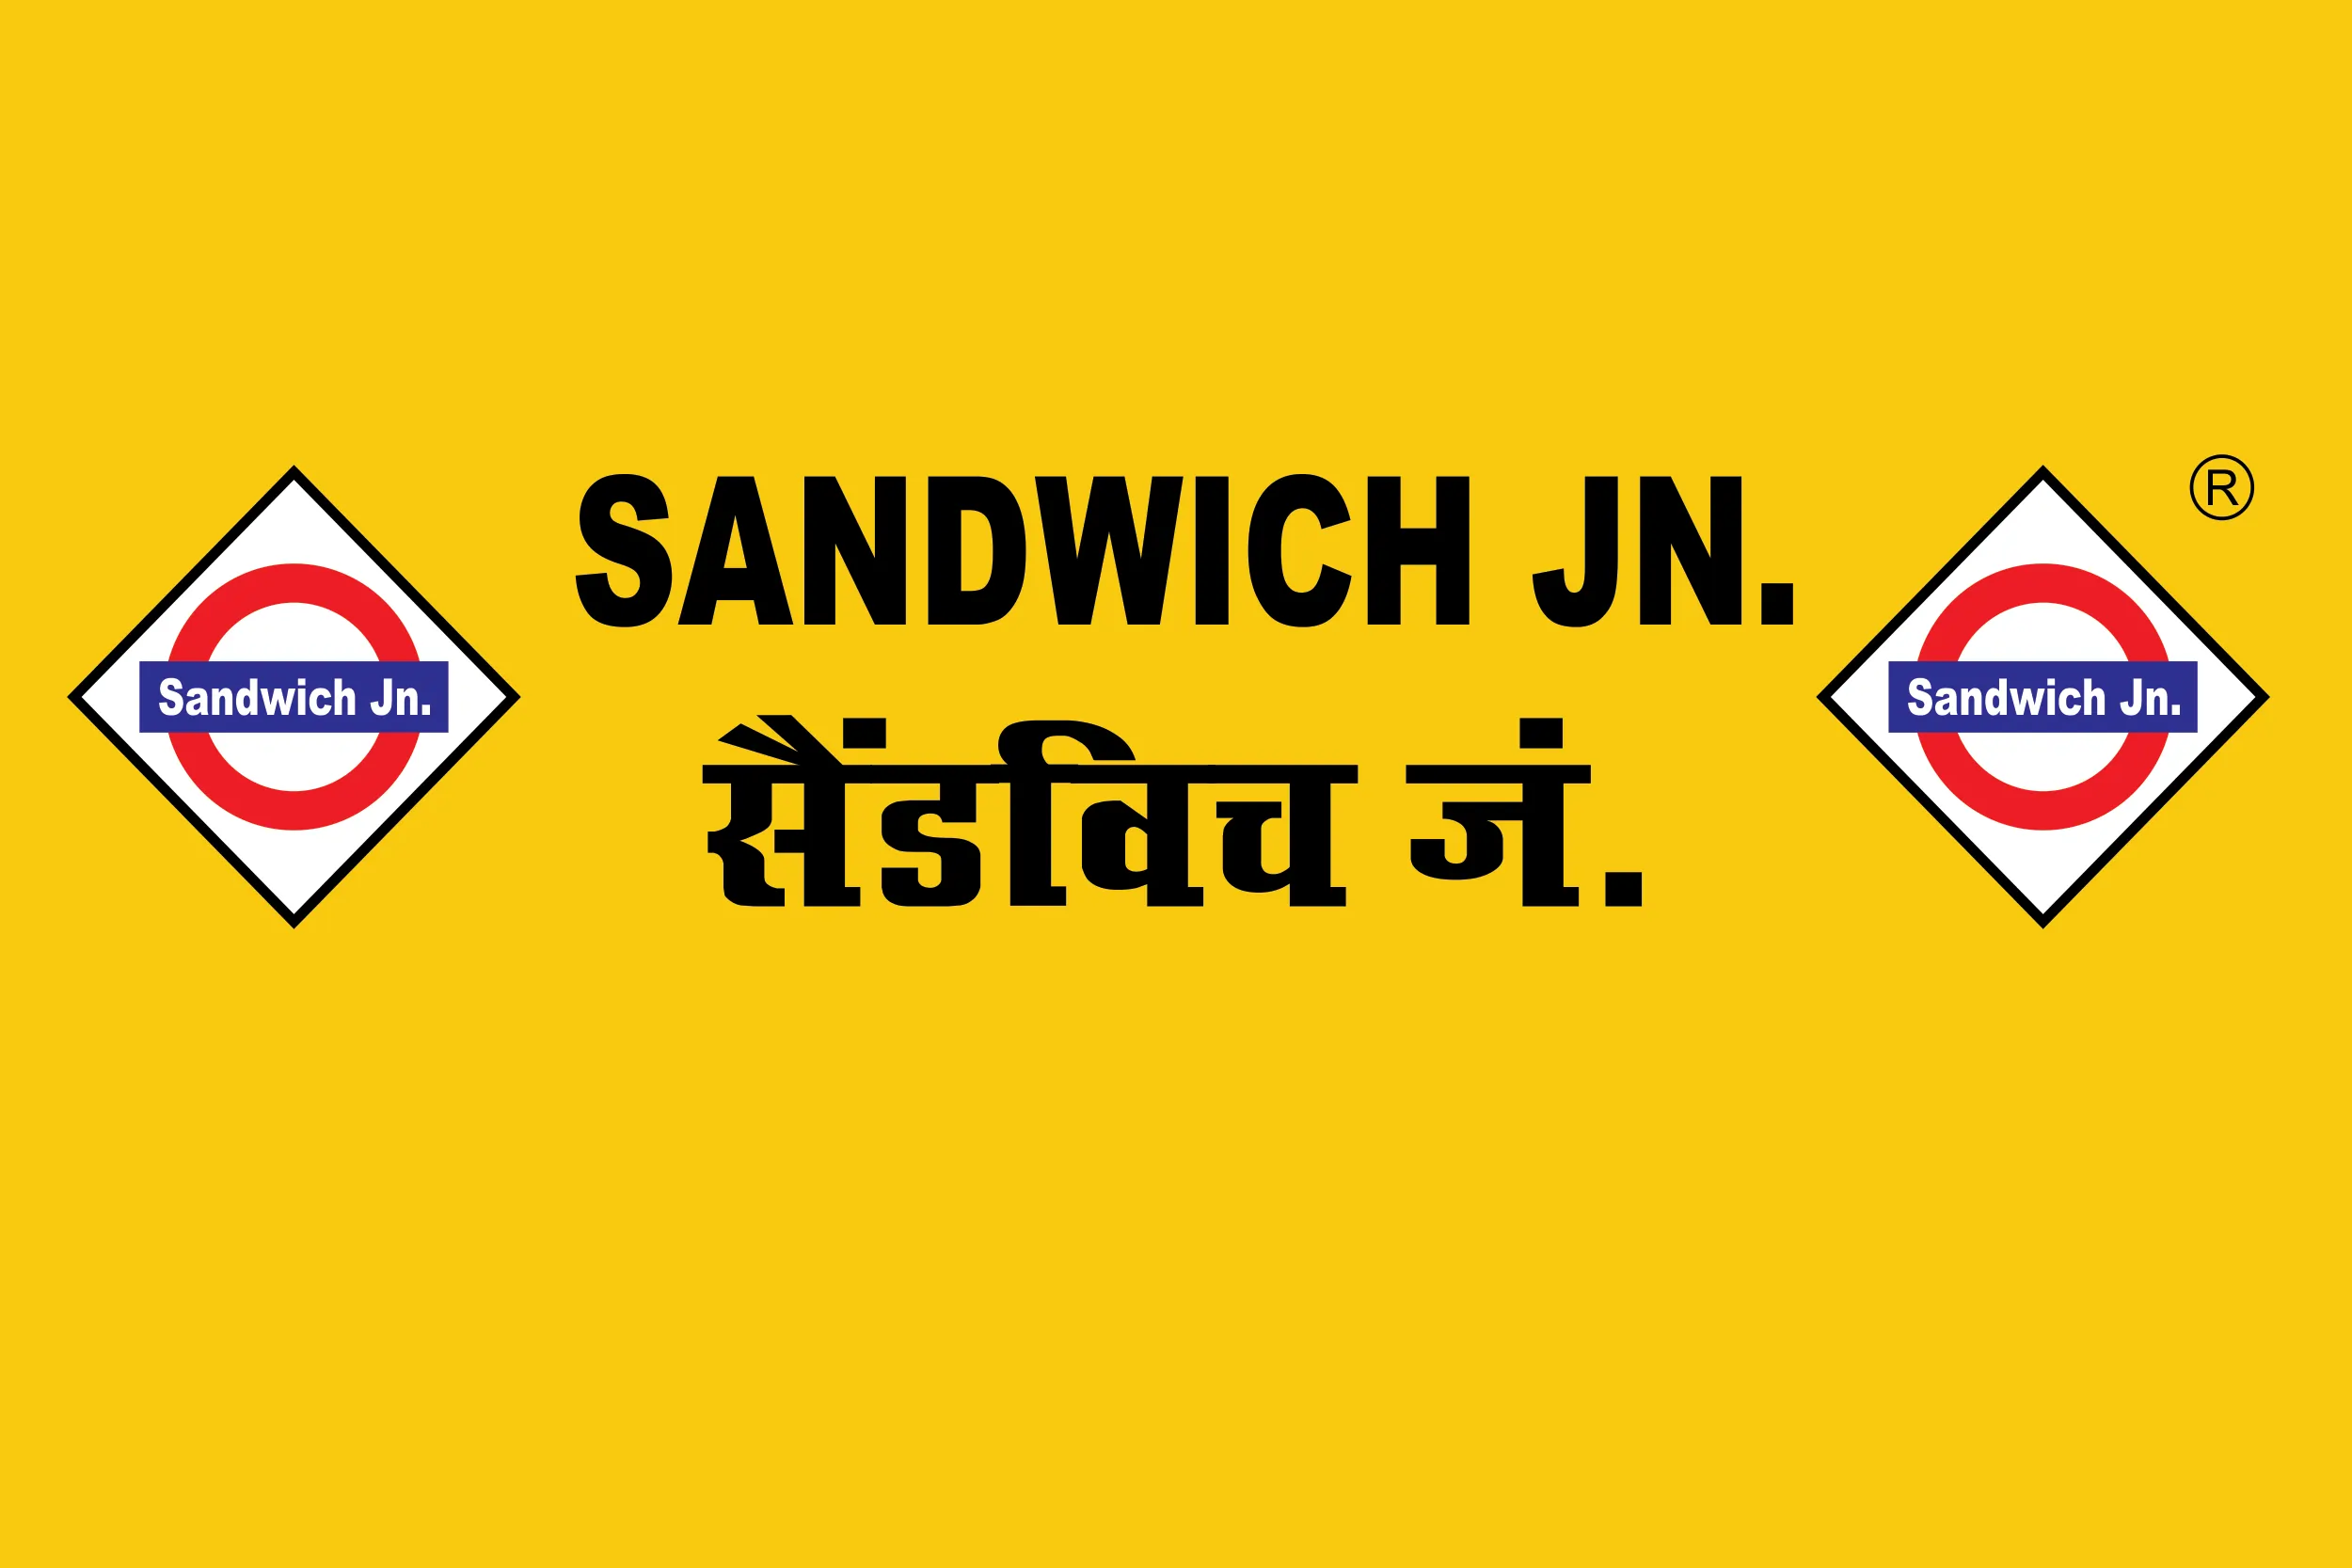 Sandwich junction